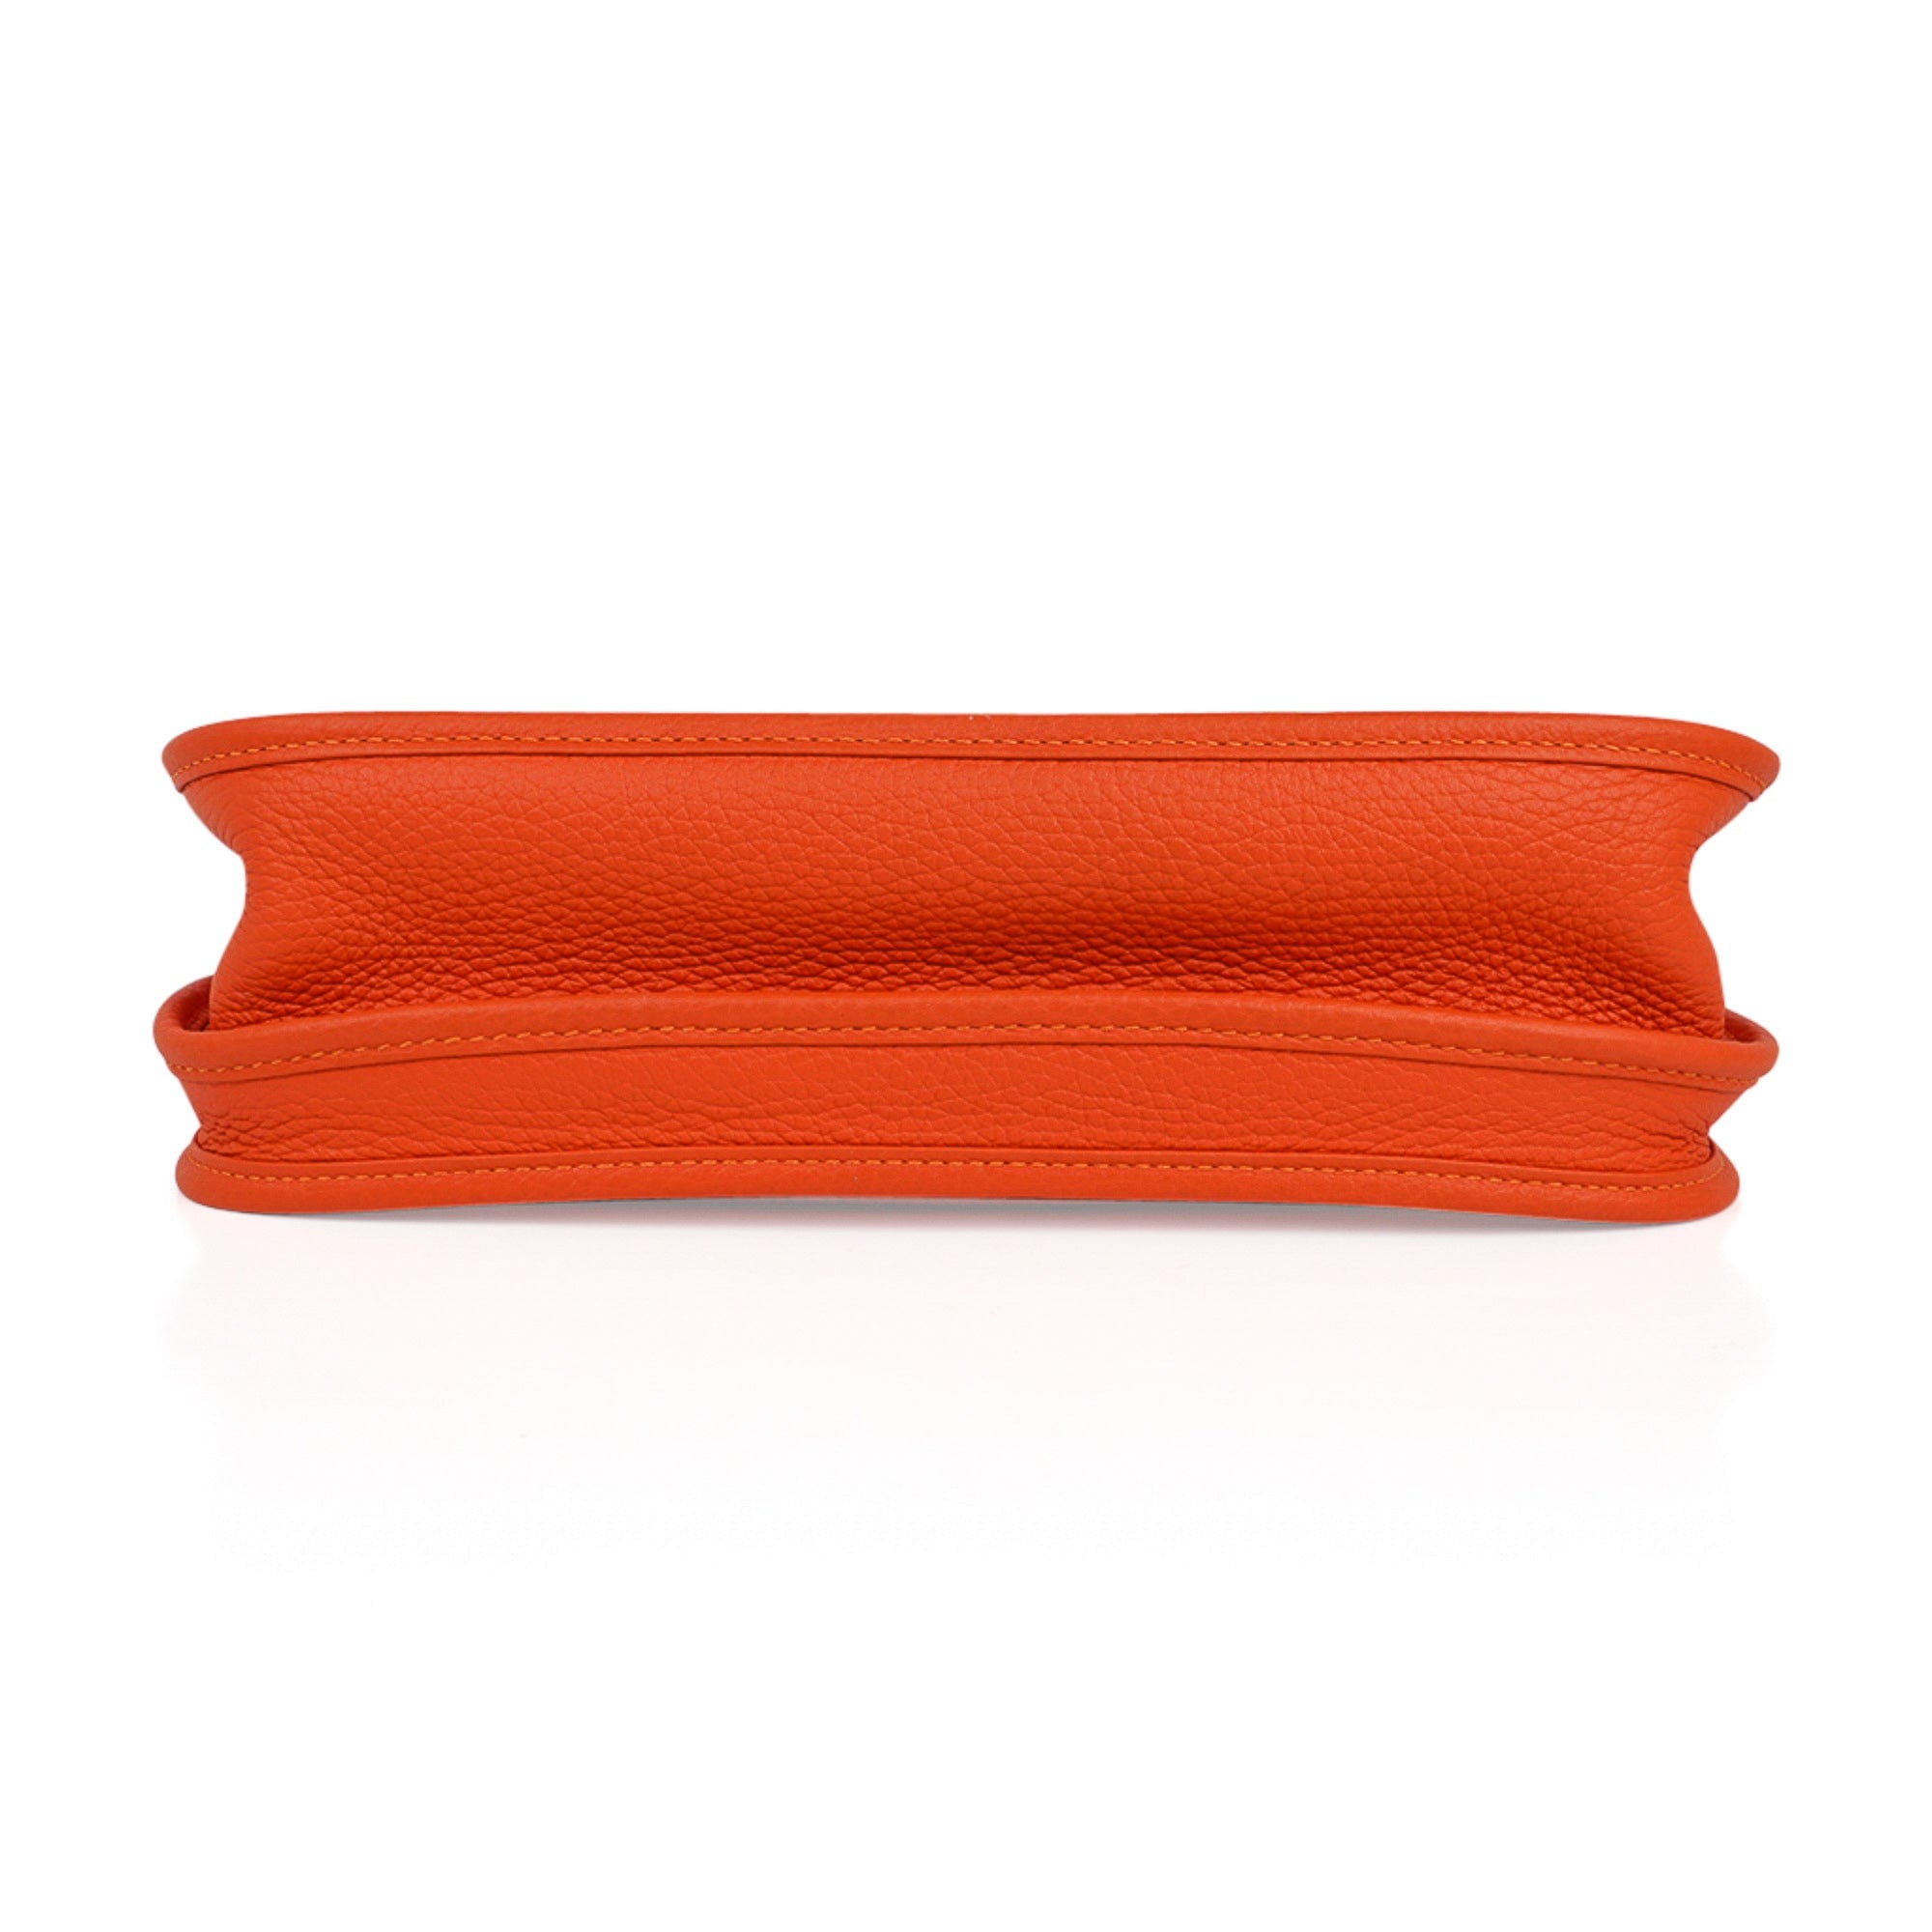 Hermes Evelyne PM Bag Feu Orange Palladium Hardware Clemence Leather